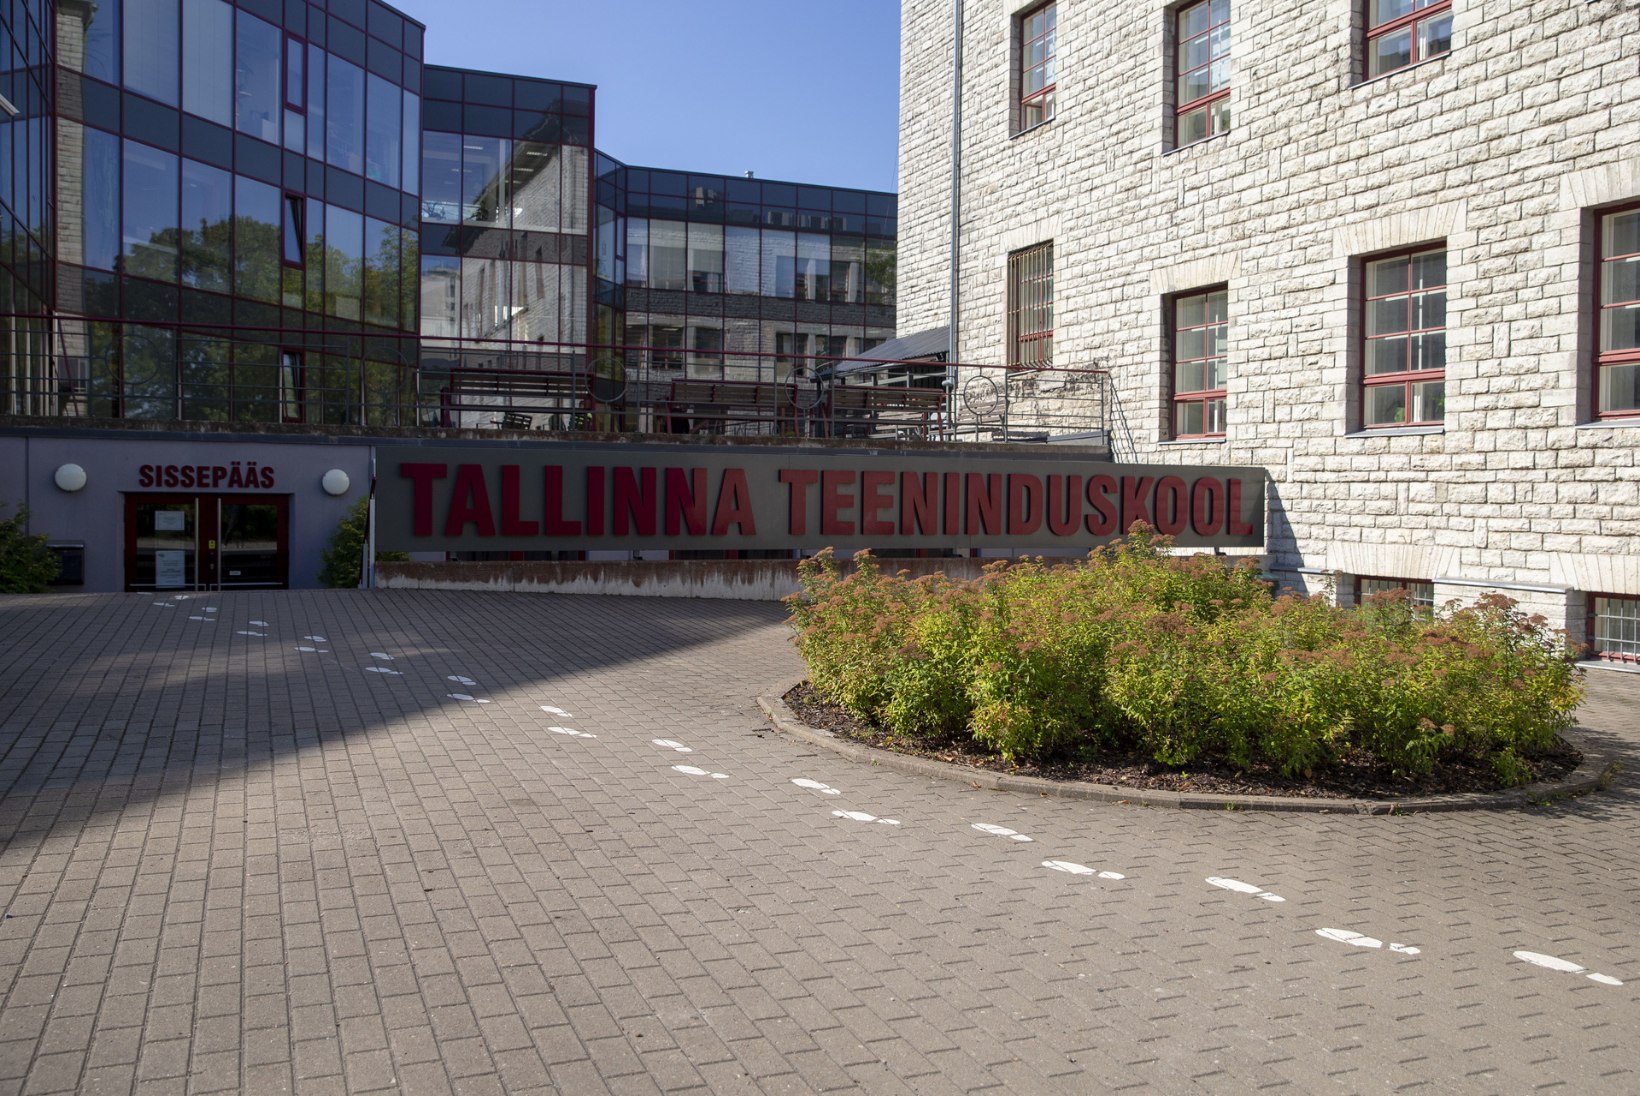 UUS AEG, UUED ÕPPEAINED: Tallinna teeninduskool avas veganikokkade eriala